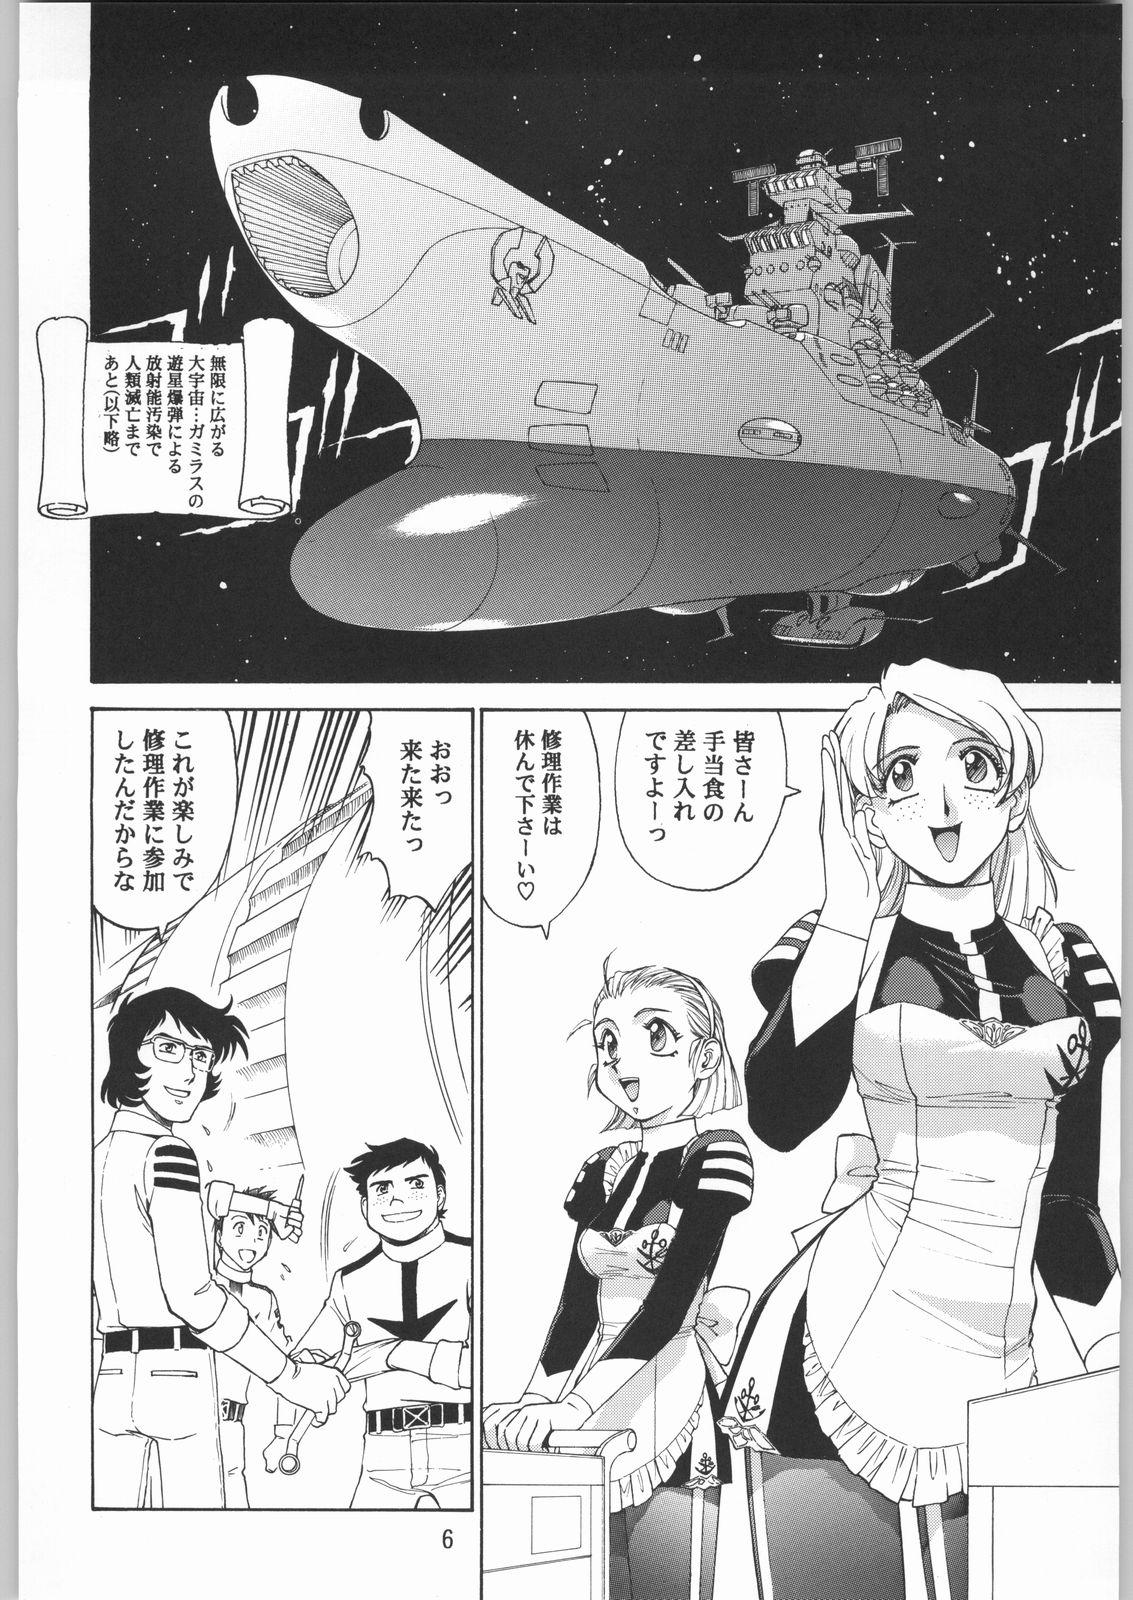 Young Petite Porn Megaton Punch 1 - Space battleship yamato Chobits Egypt - Page 5